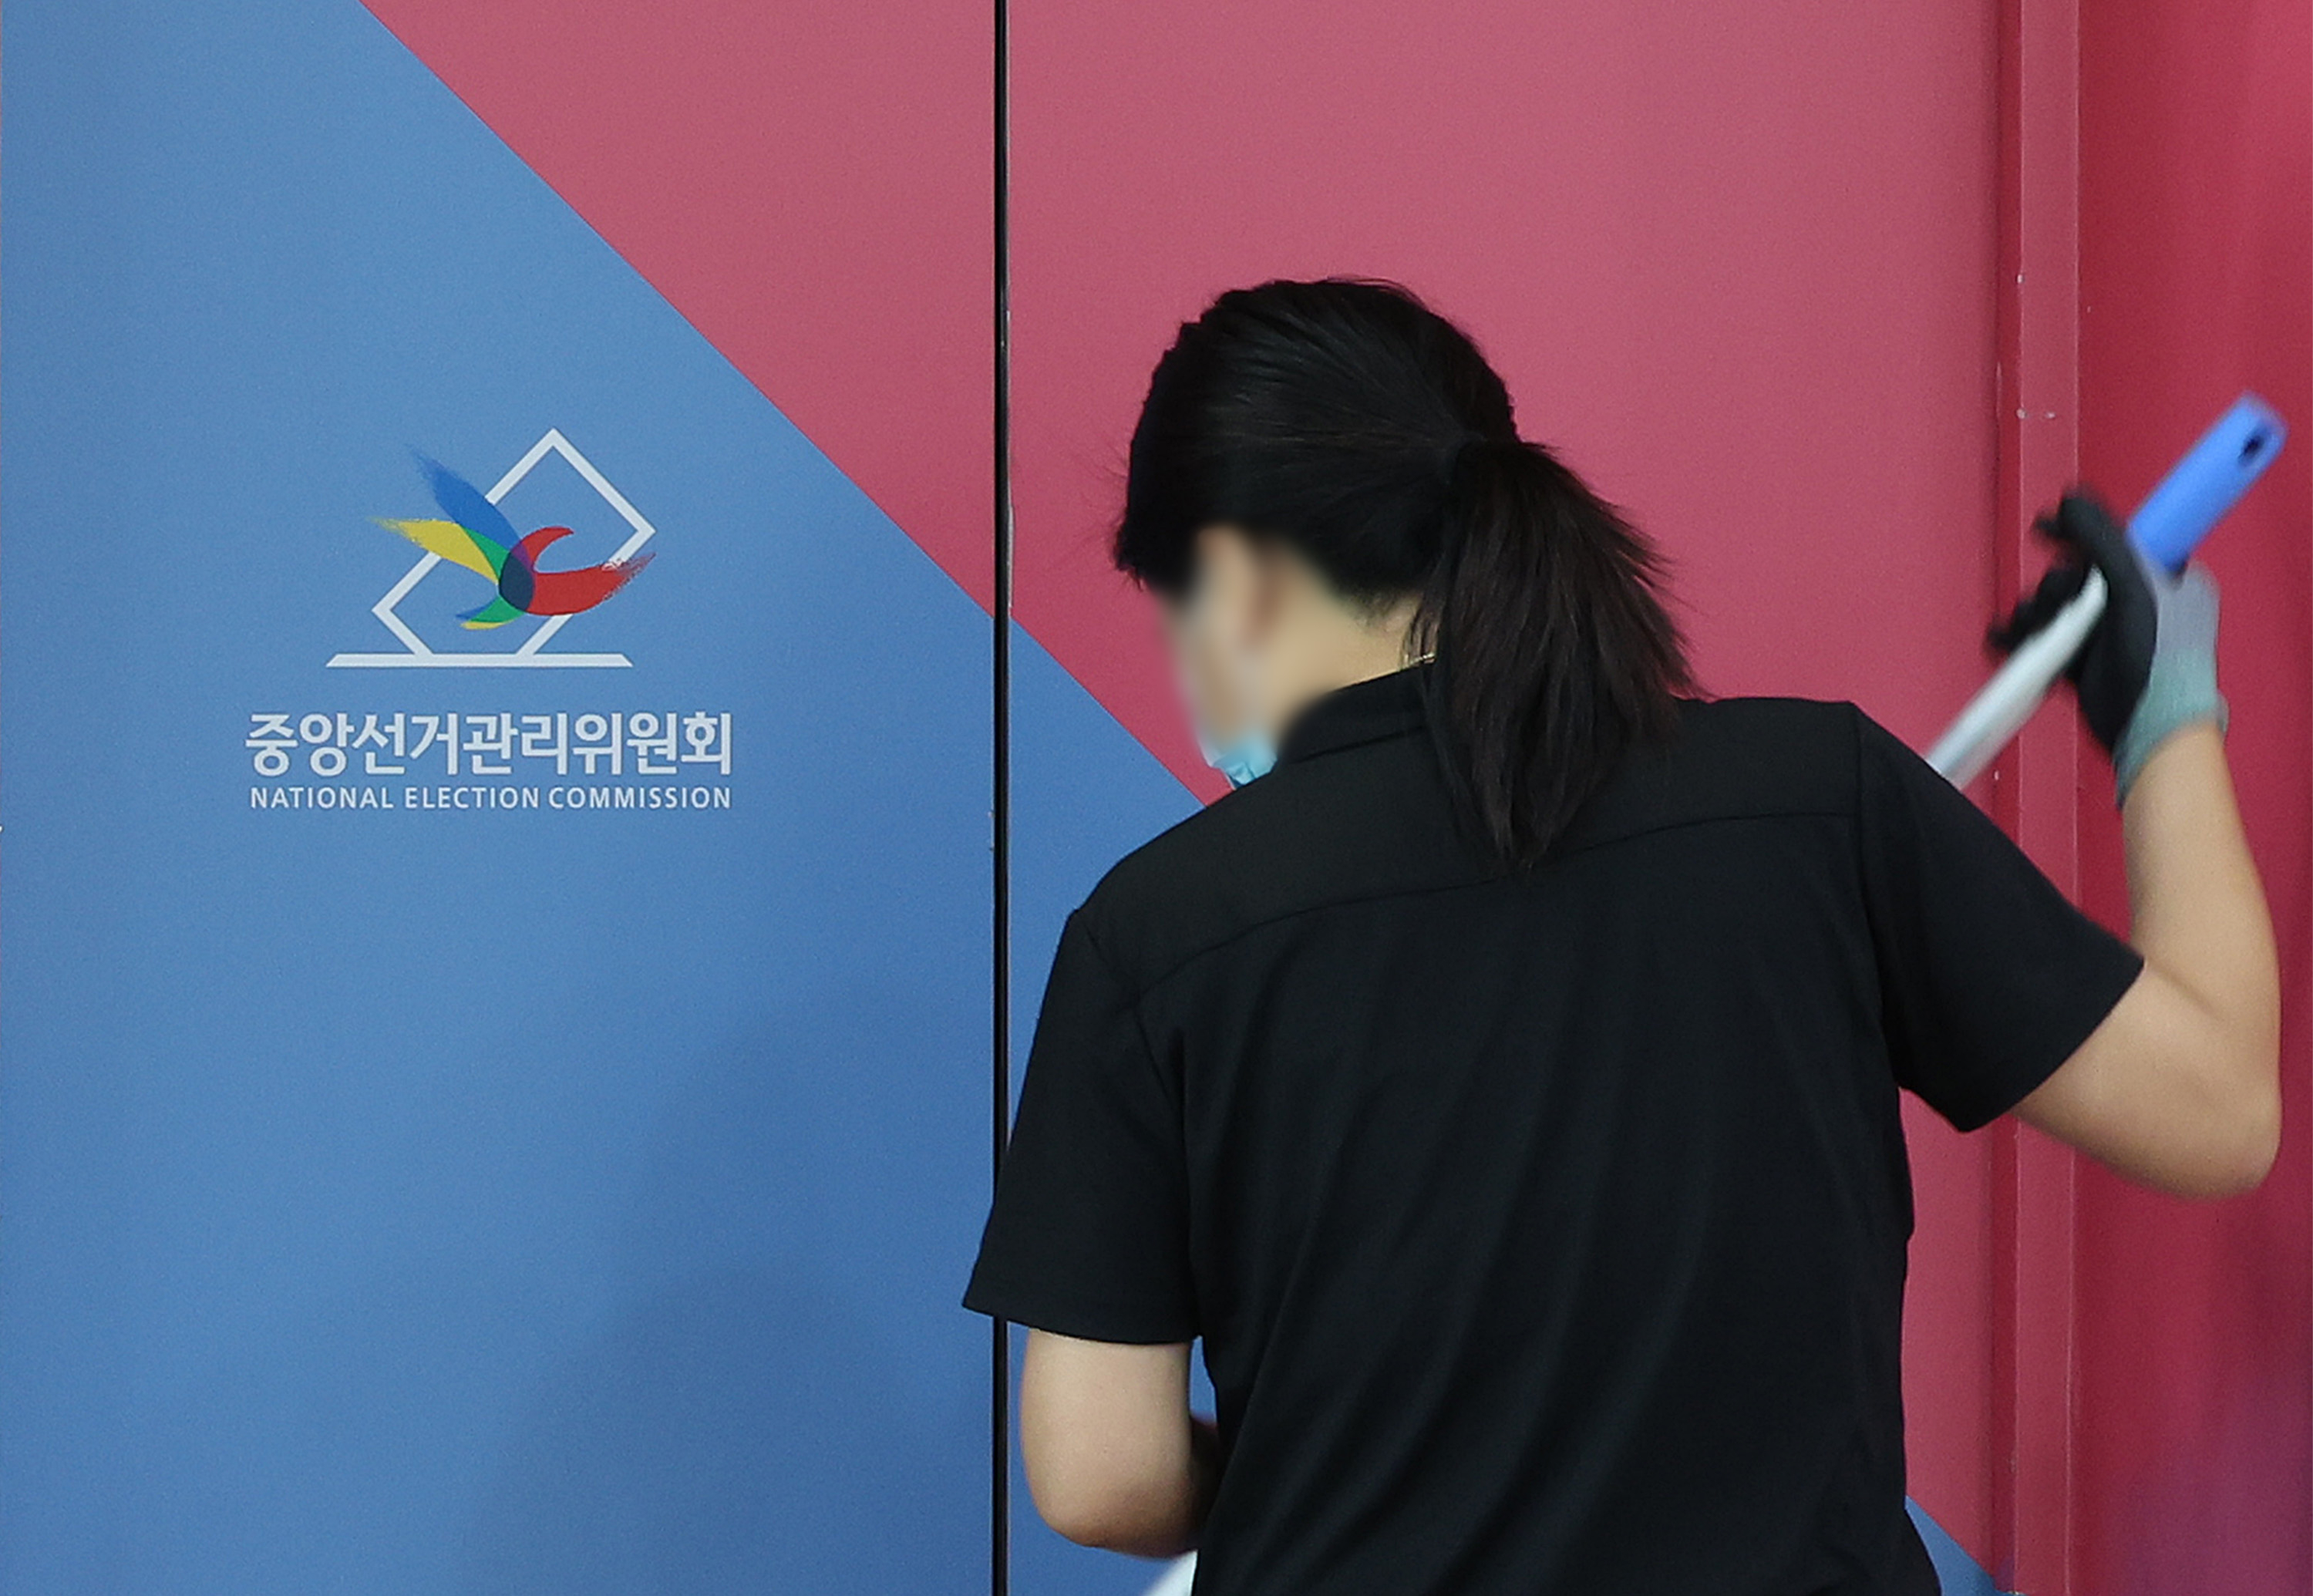 ‘자녀 특혜채용’ 의혹 감사 거부 논란 속 중앙선관위